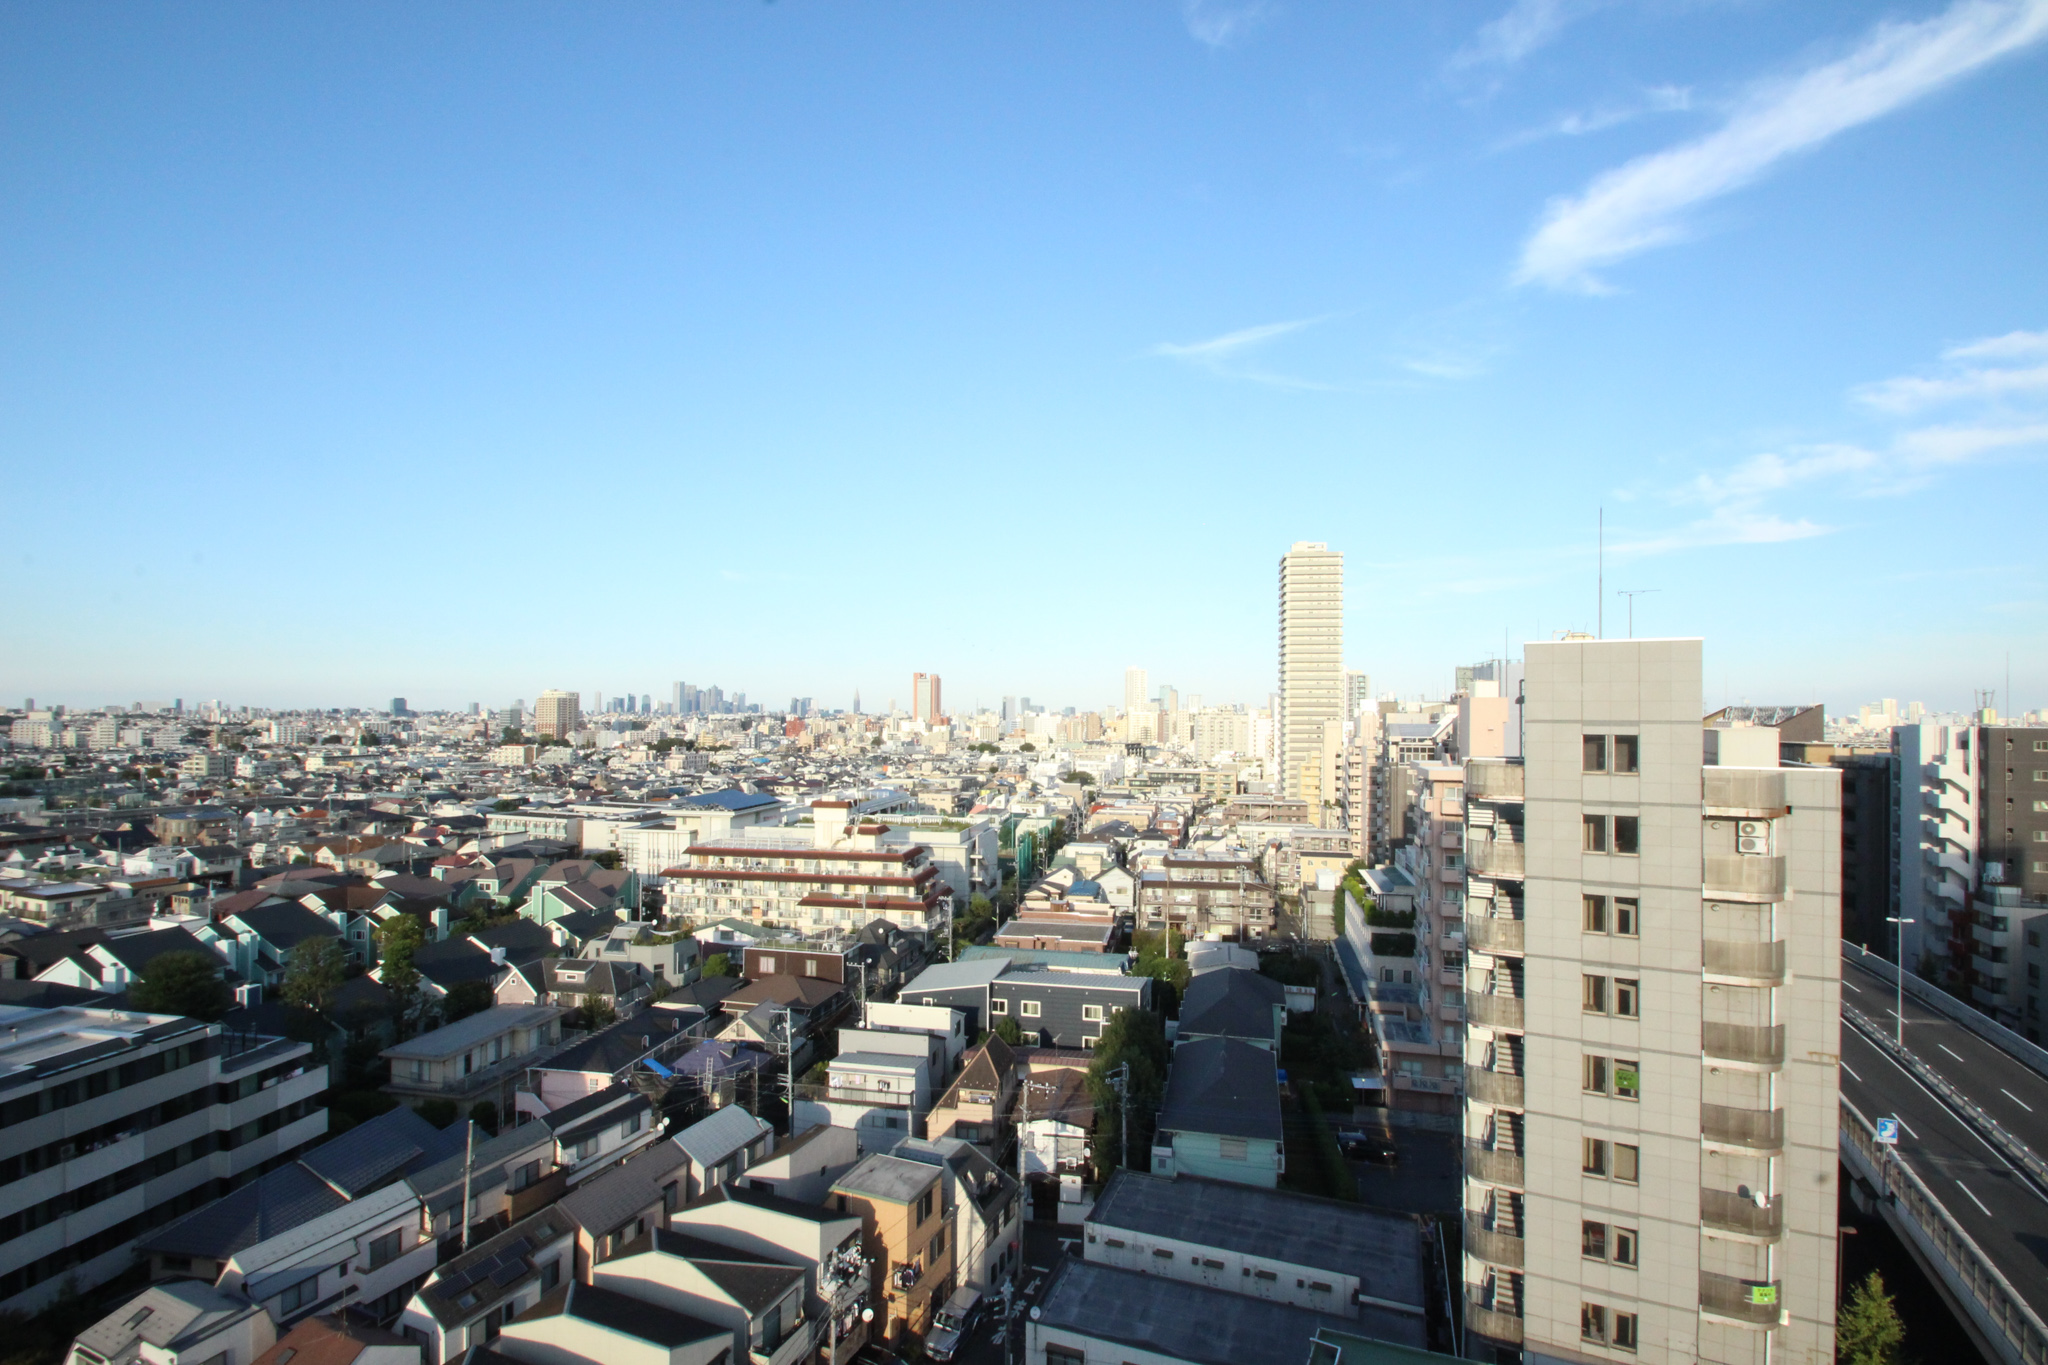 シェアプレイス駒沢の人気のポイントの一つである、開放的な眺望。眺望の良さも条件にいれたい方は、高層階のお部屋を選んだら良さそうです。（写真提供：株式会社リビタ）